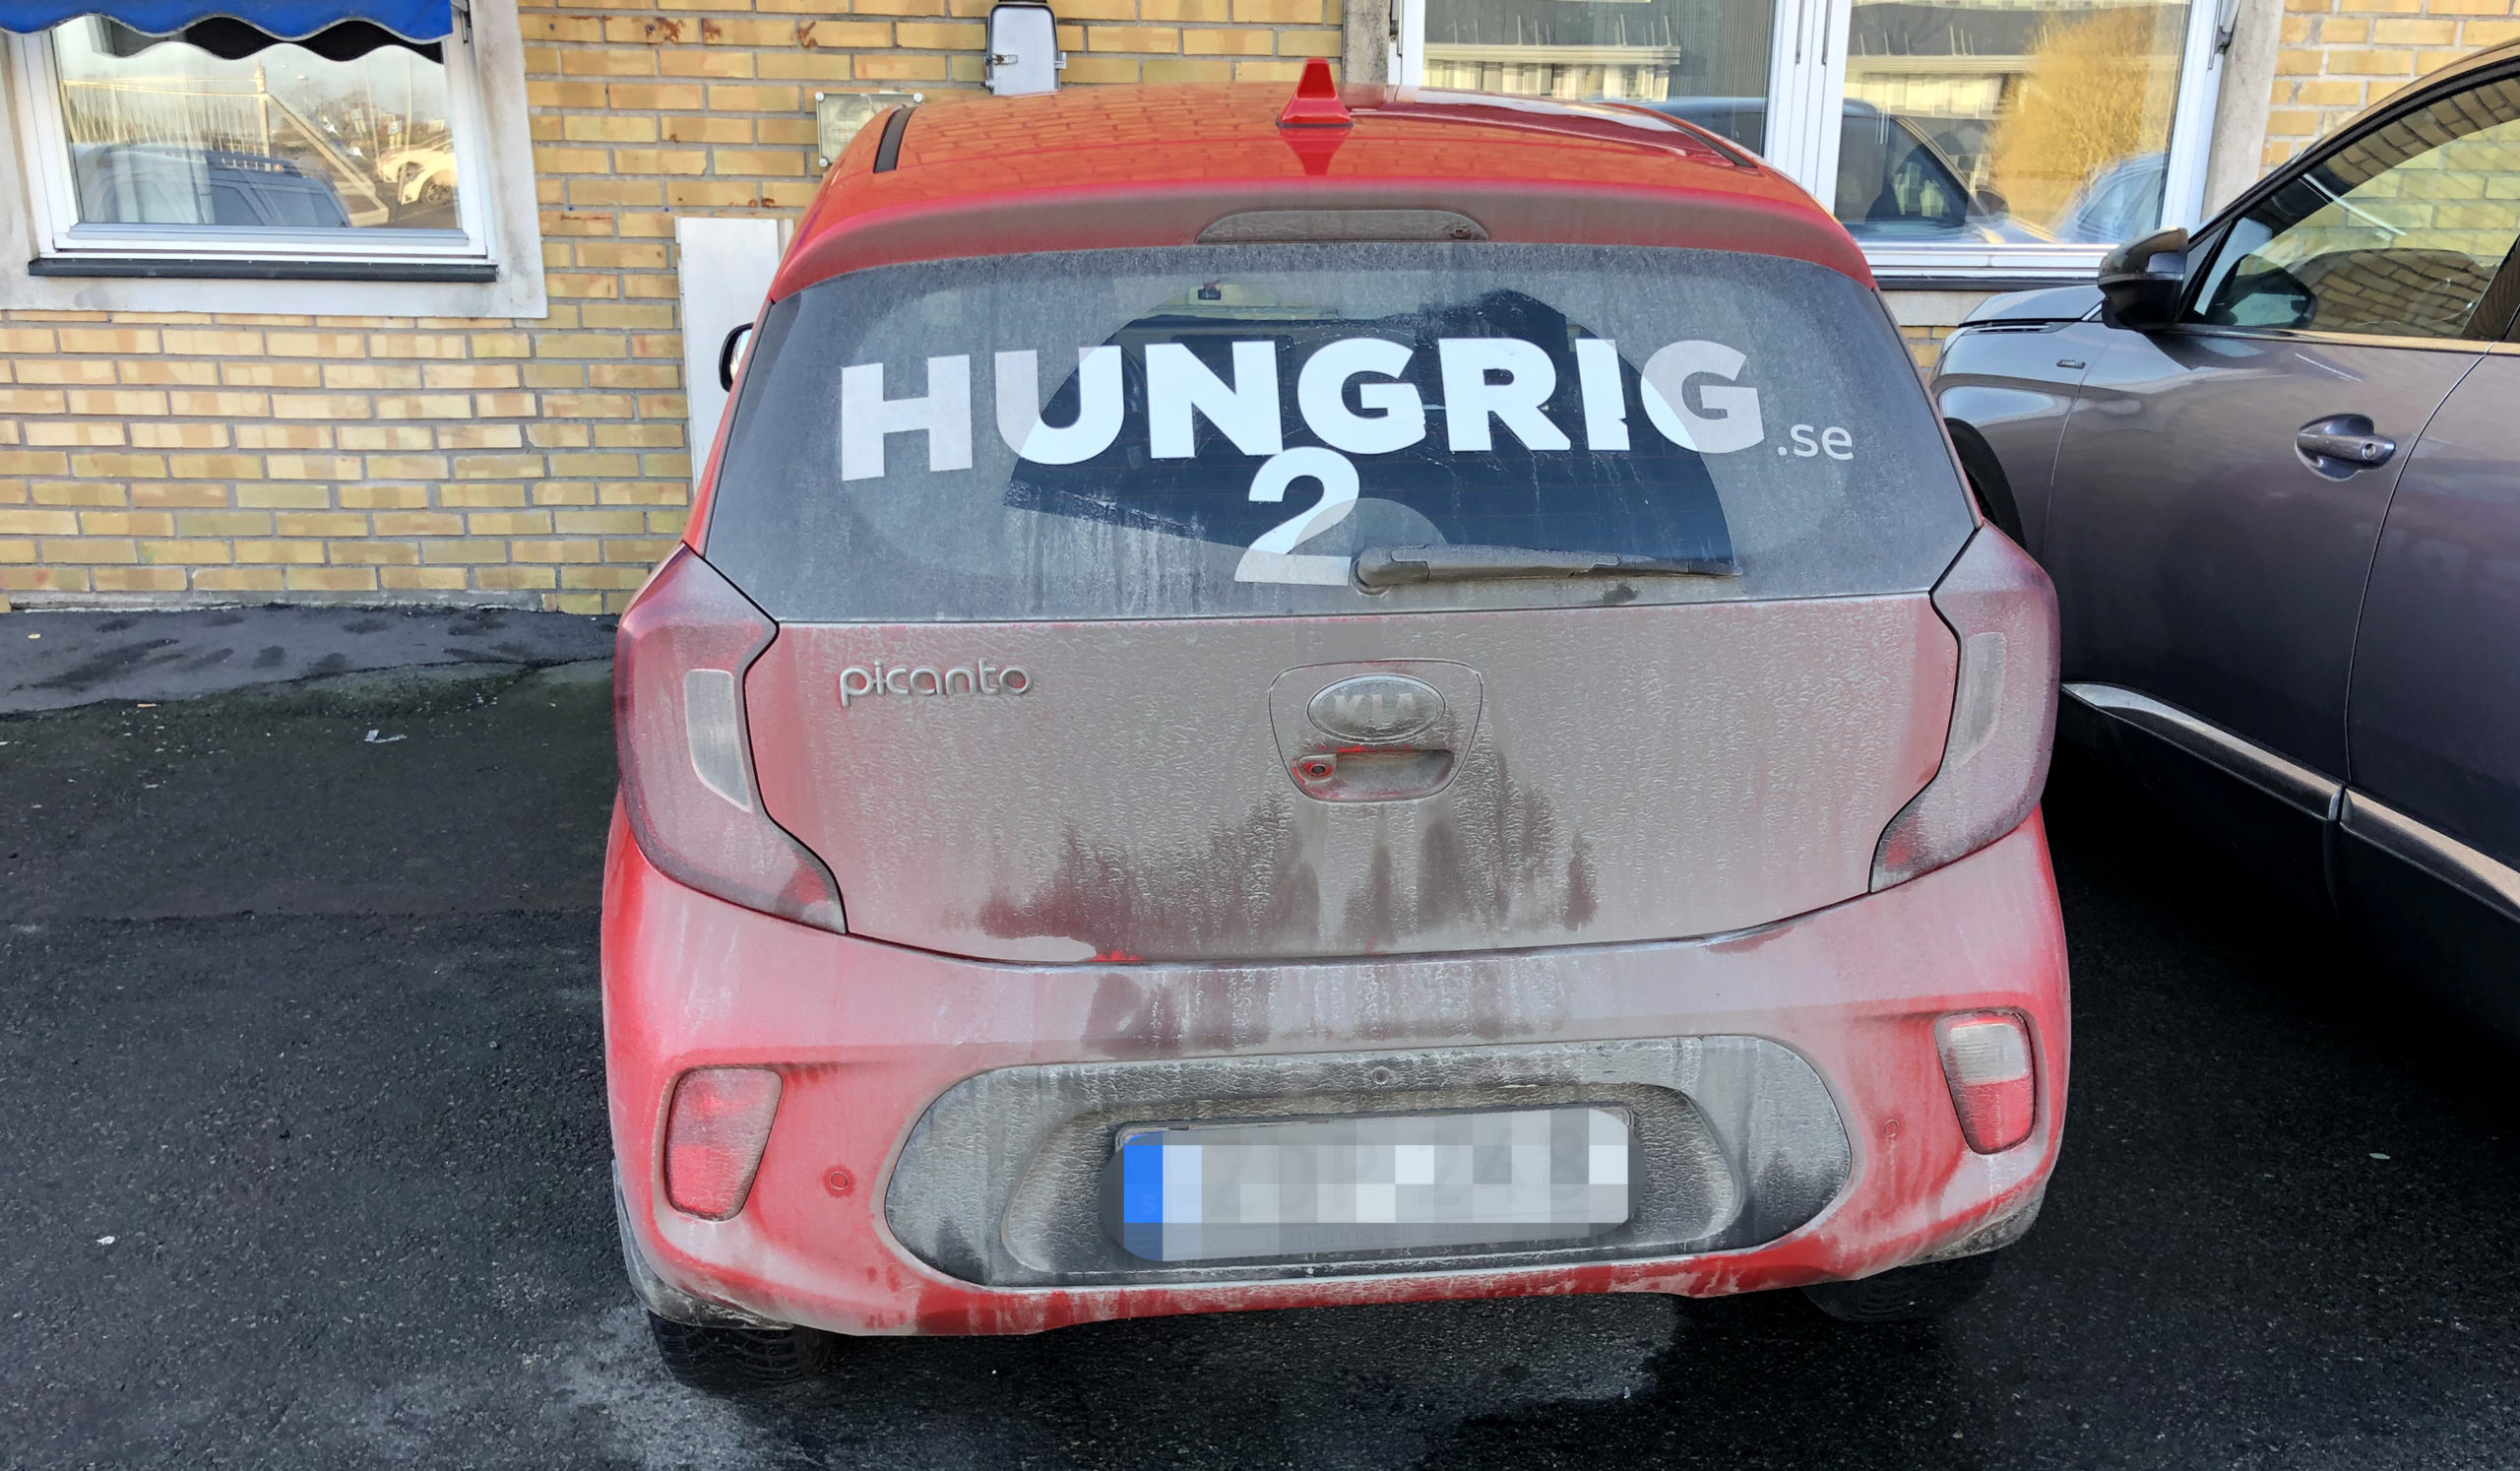 Hungrig.se hade uppställningsplats för sina bilar utanför Transports avdelning i Kristianstad. Fordonet på bilden är numera sålt till en privatperson.